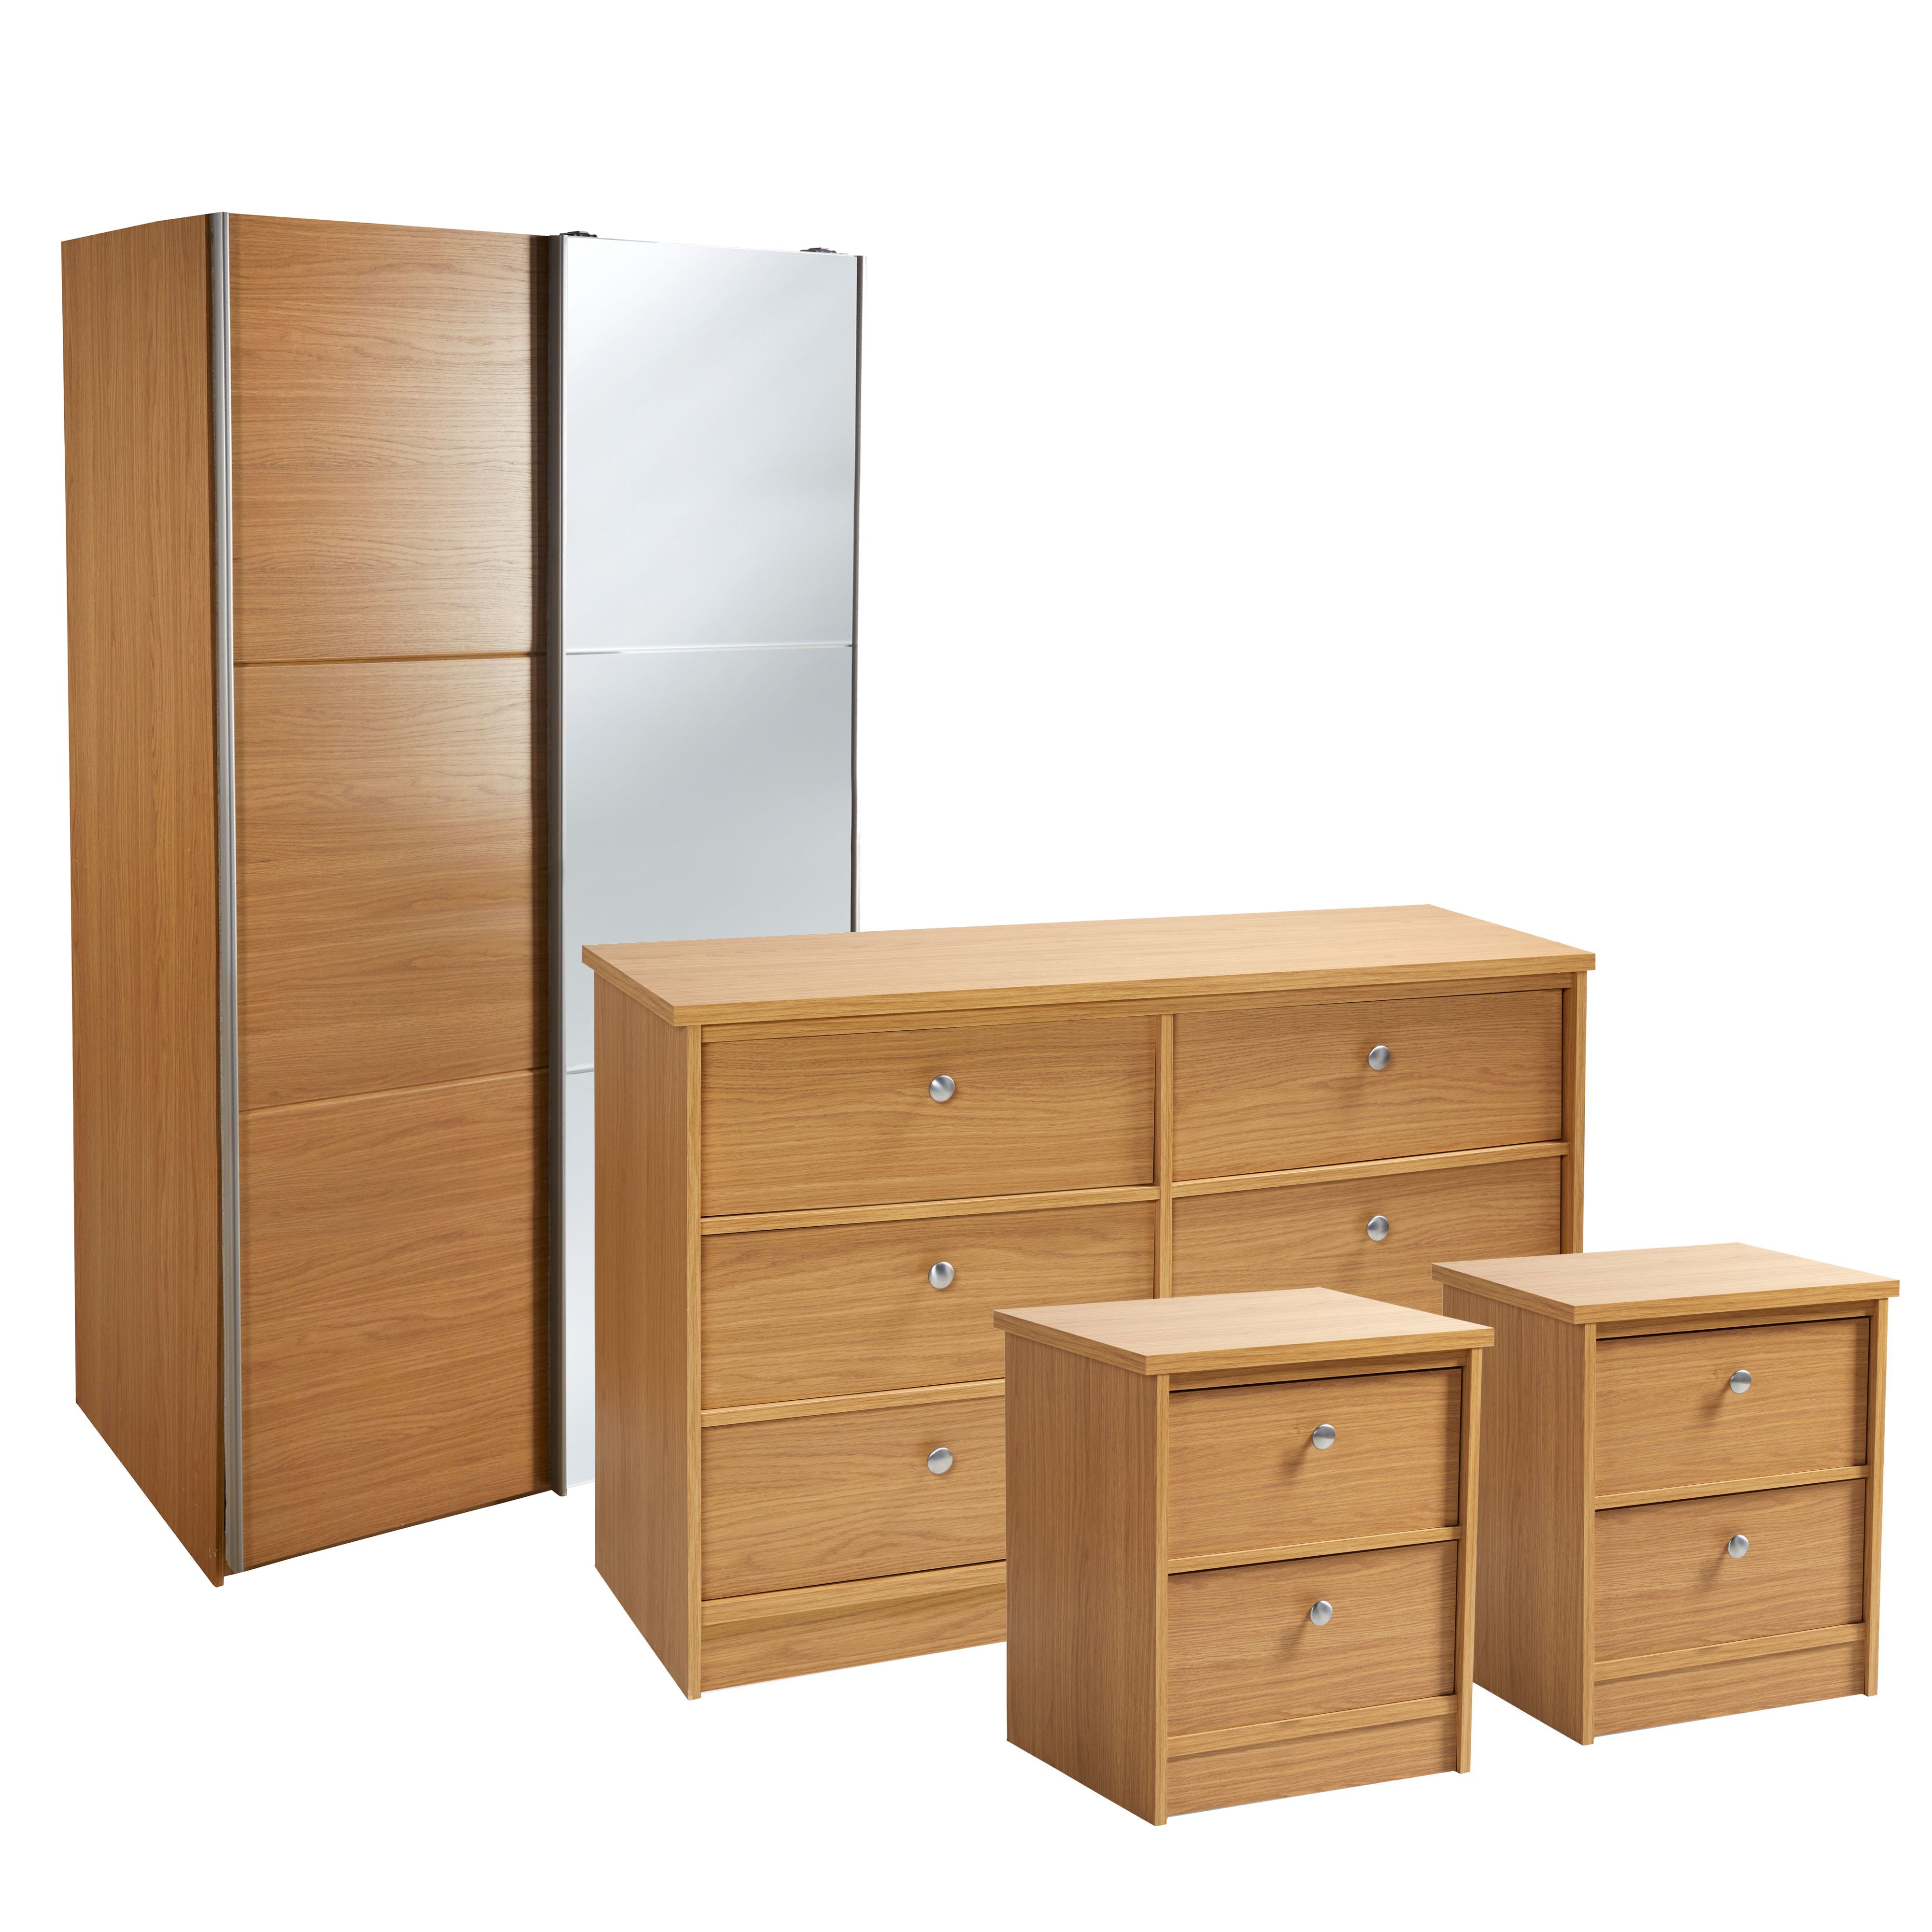 Kendal Bedroom furniture set